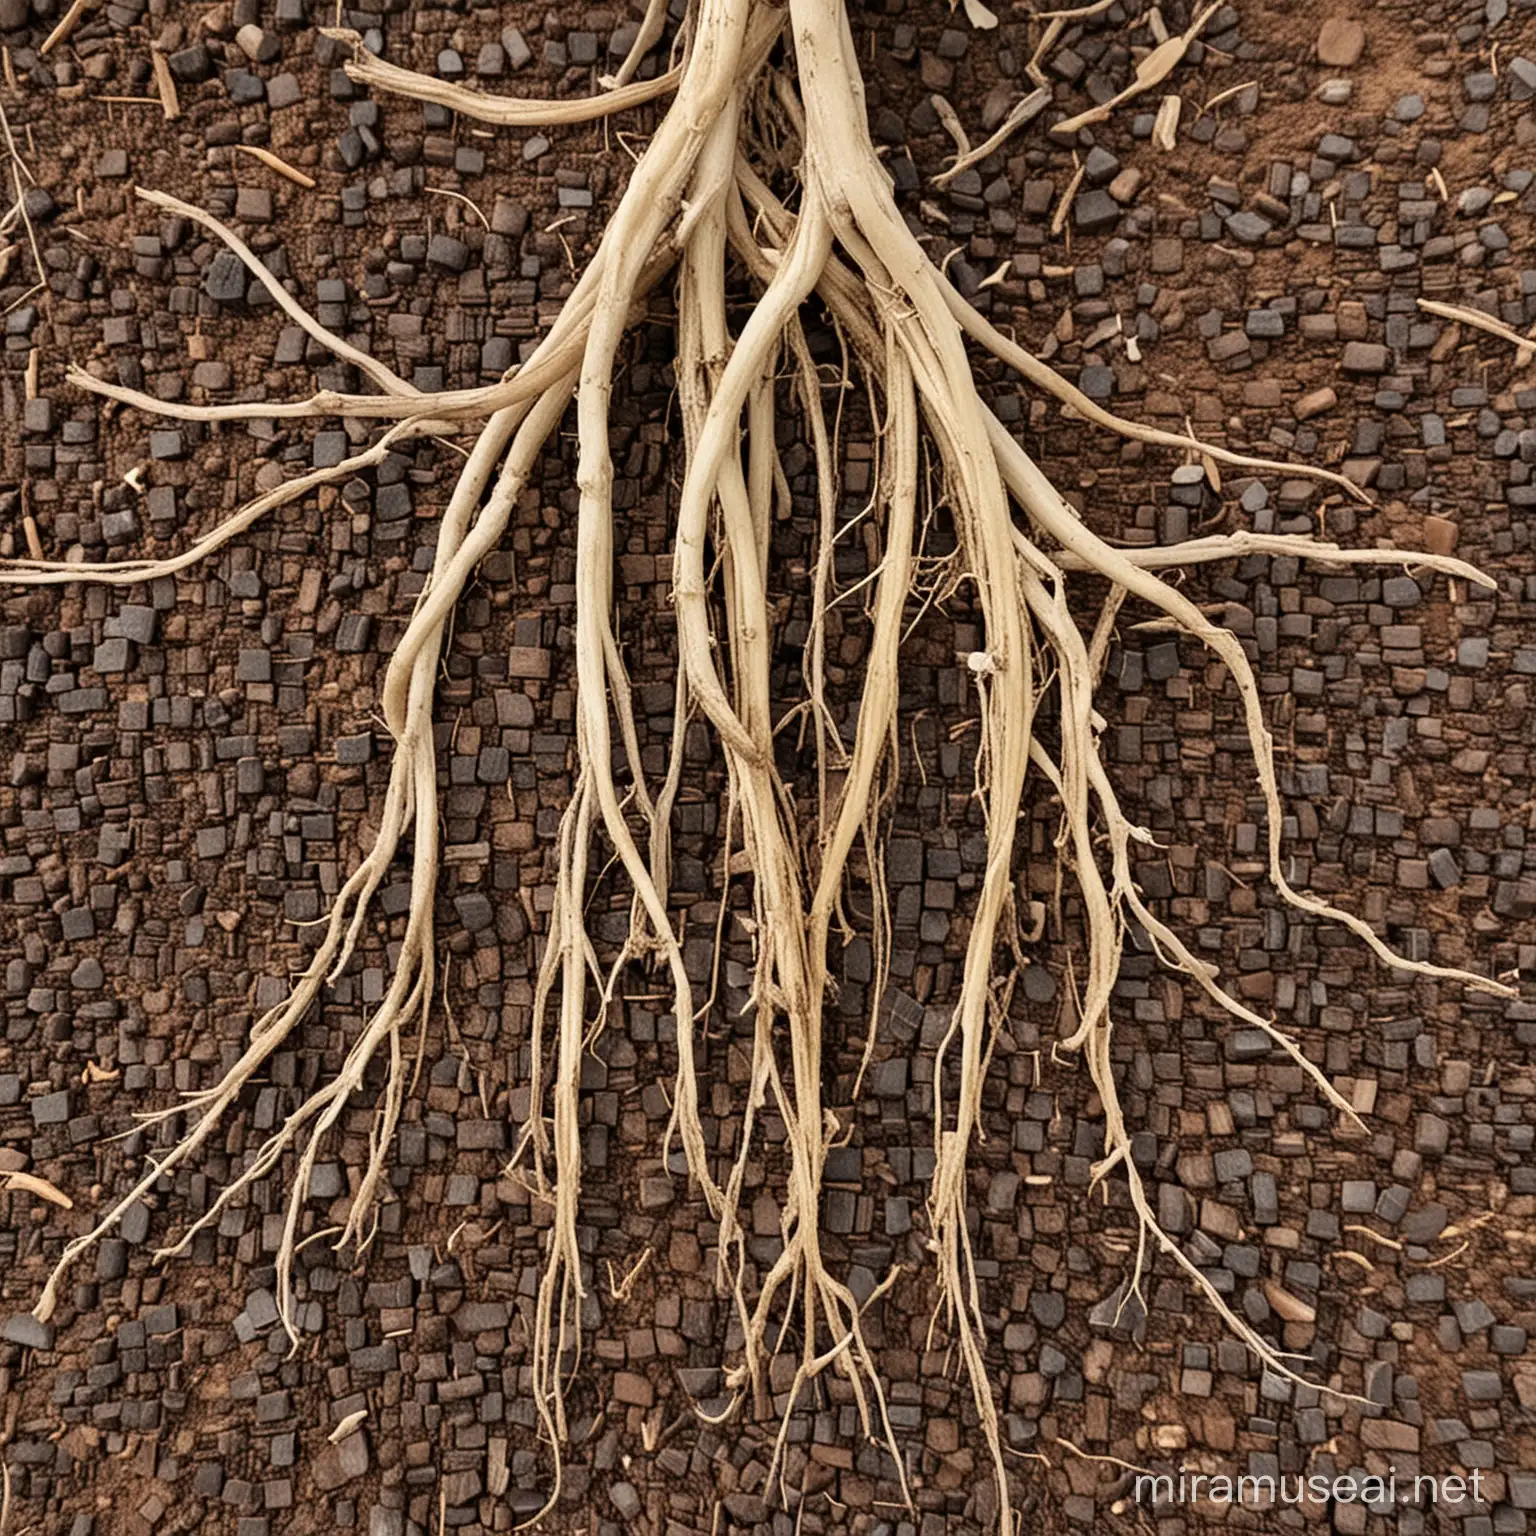 Licorice plant roots